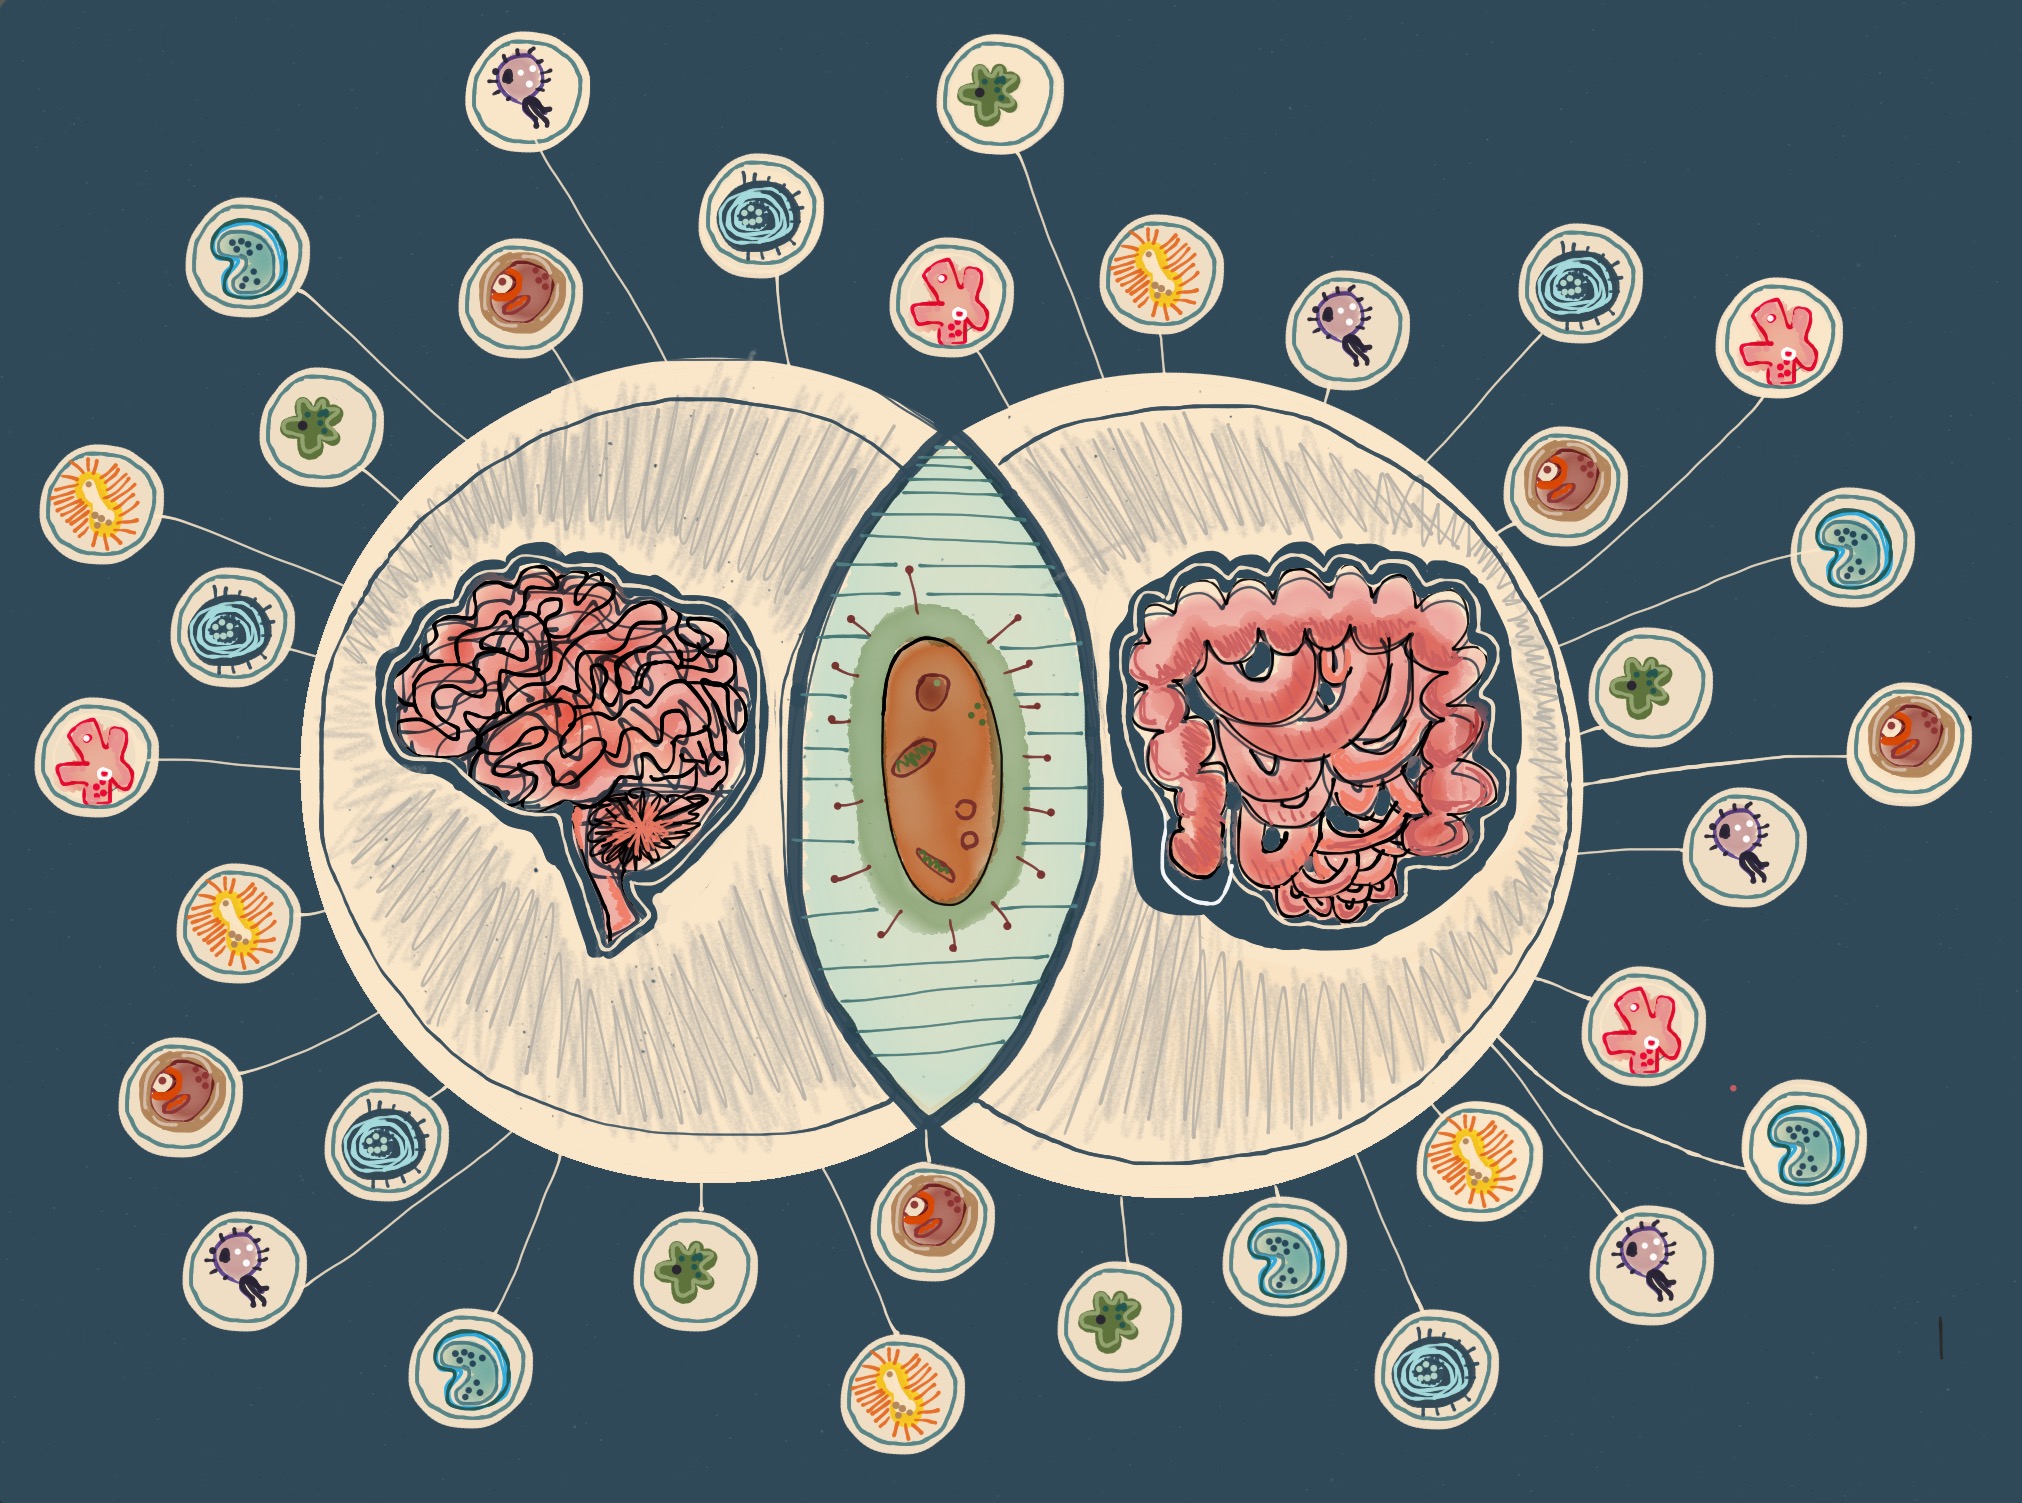 Mikrobiom a układ nerwowy Ostatnie badania, wskazują na pewną korelację między zmianami w składzie mikrobioty jelit, a zaburzeniami psychicznymi, co sugeruje istnienie kluczowych zależności w obrębie osi mózg-jelita-mikrobiota.